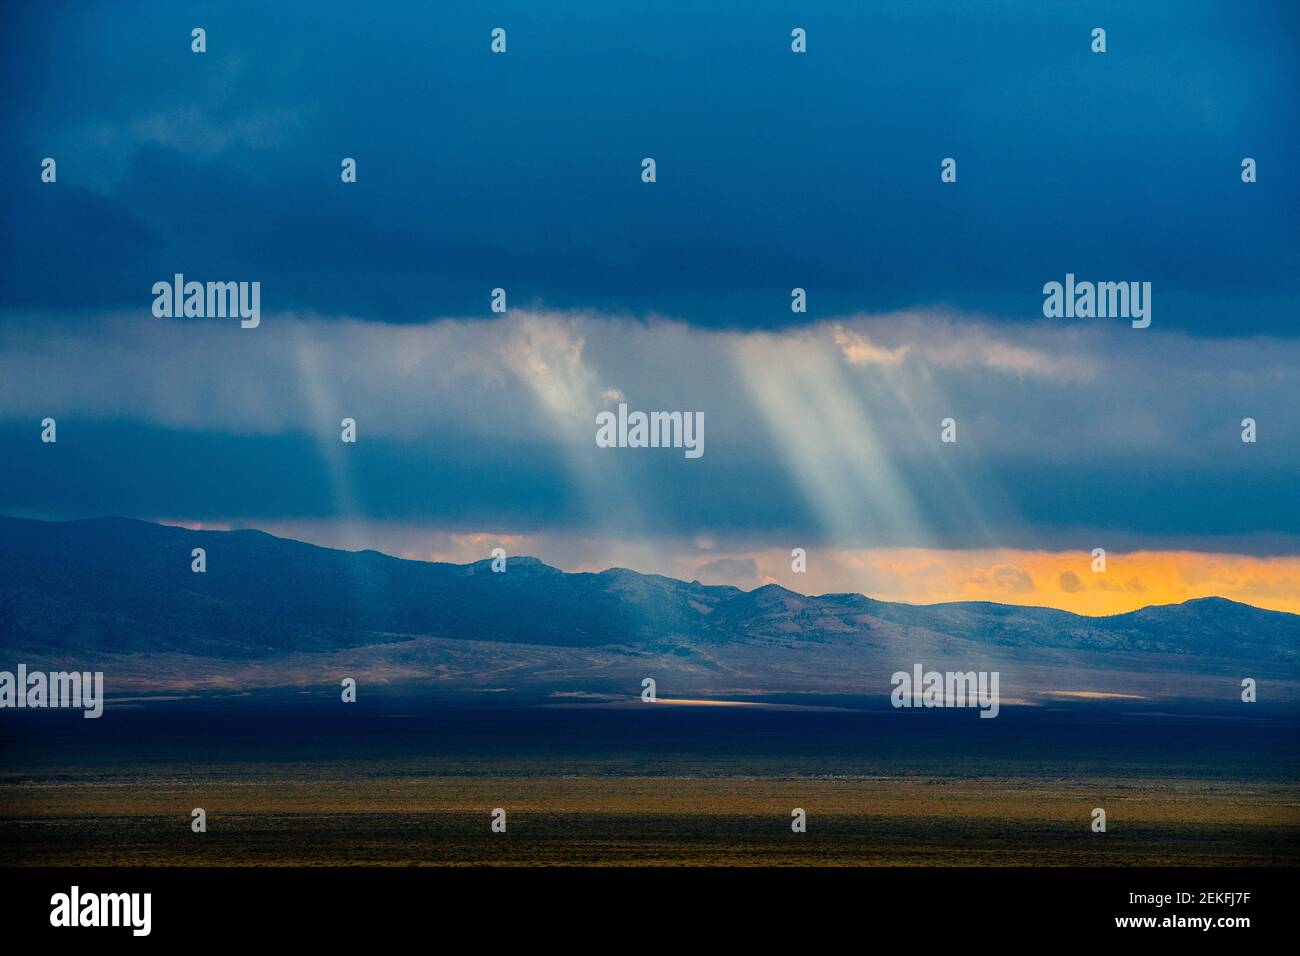 Rayons de soleil rayant à travers les nuages de tempête, parc national de Great Basin, Nevada, États-Unis Banque D'Images